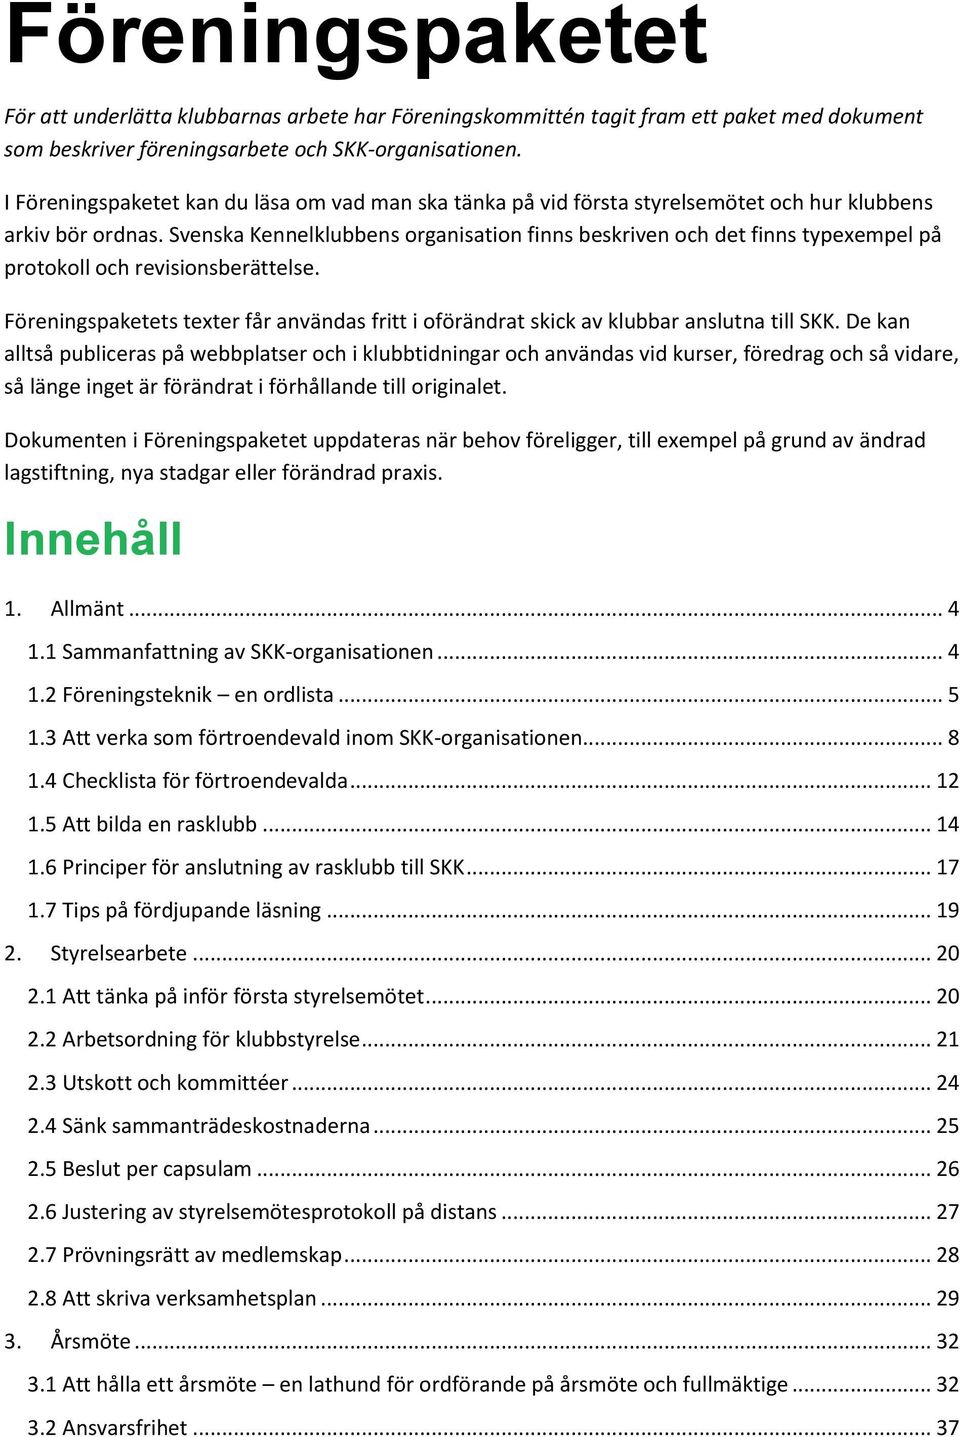 Svenska Kennelklubbens organisation finns beskriven och det finns typexempel på protokoll och revisionsberättelse.